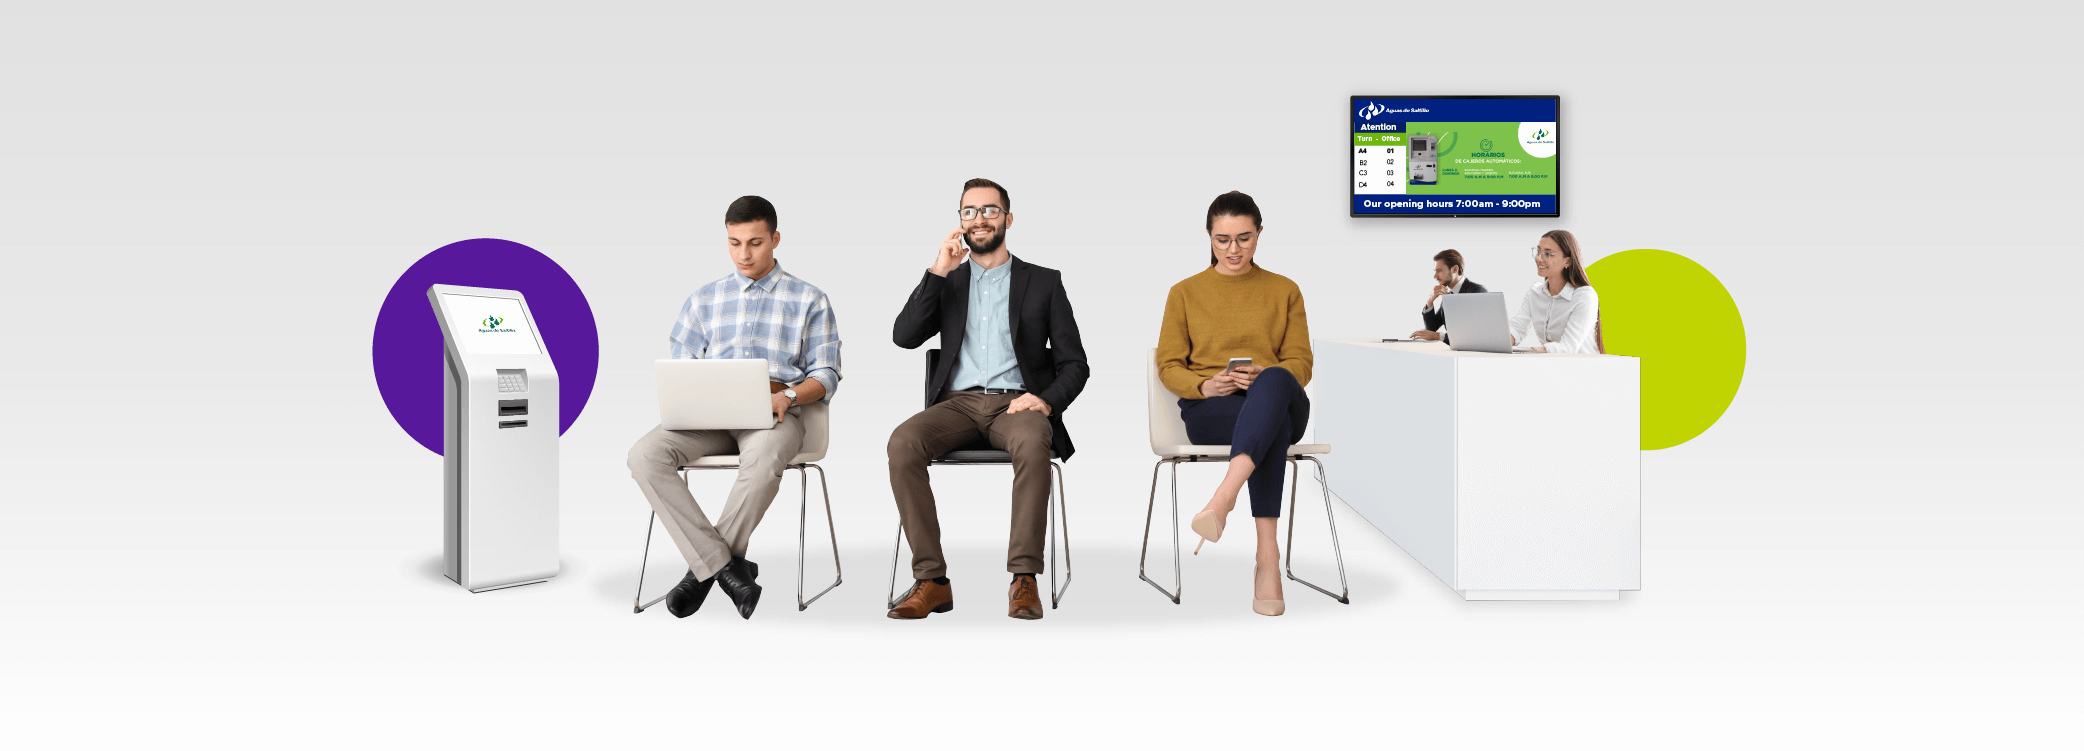 Sala de espera onde dois homens e uma mulher estão sentados com sinalização digital da marca aguas de saltillo